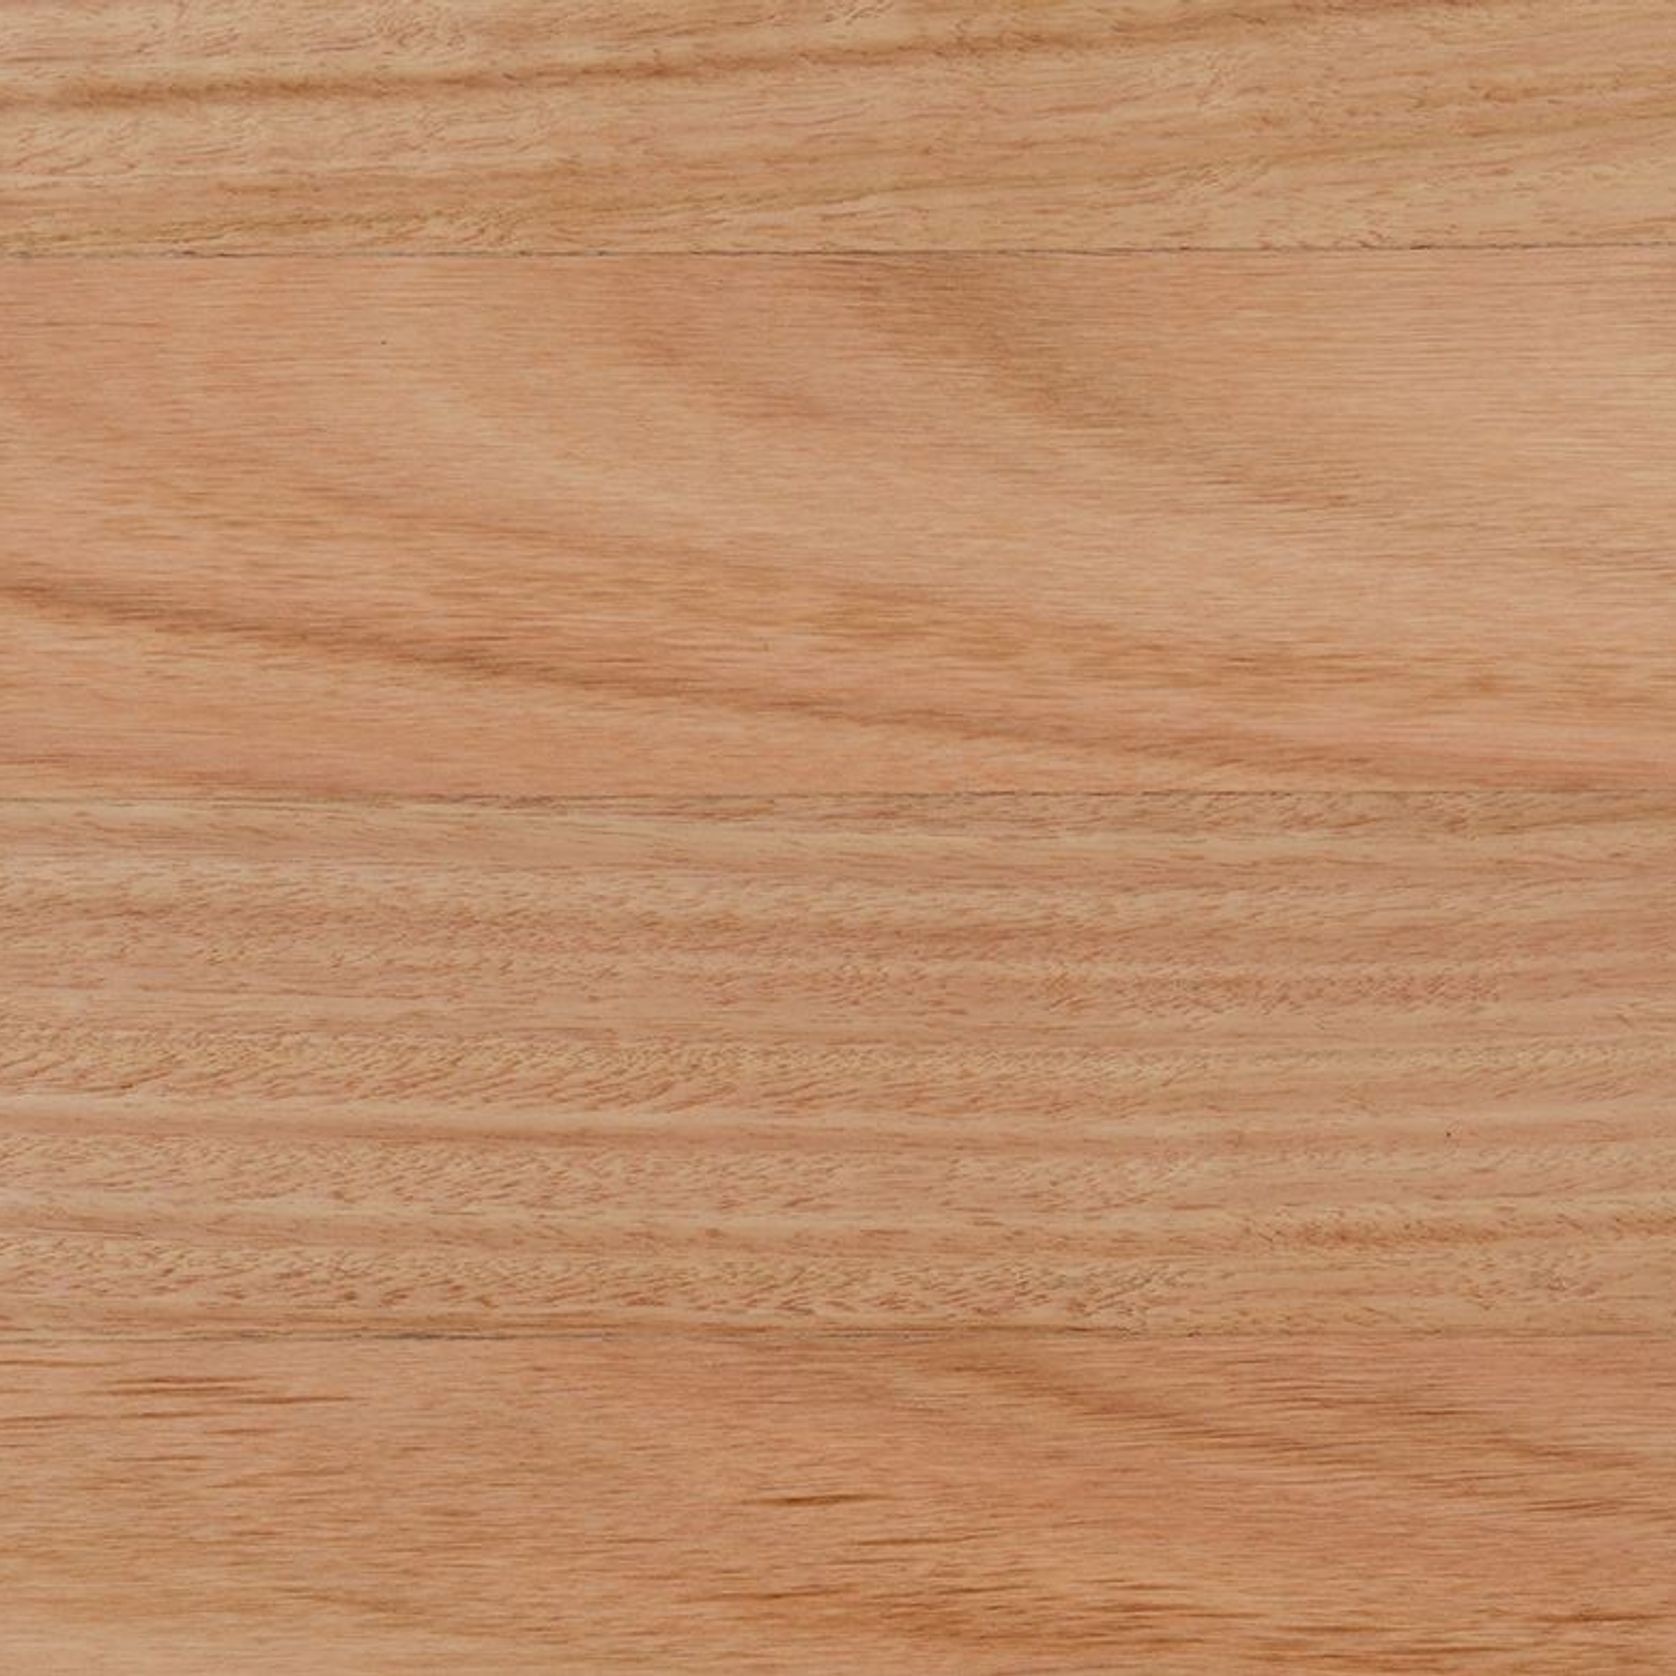 Saligna Wood Flooring, Water Based Polyurethane Finish gallery detail image